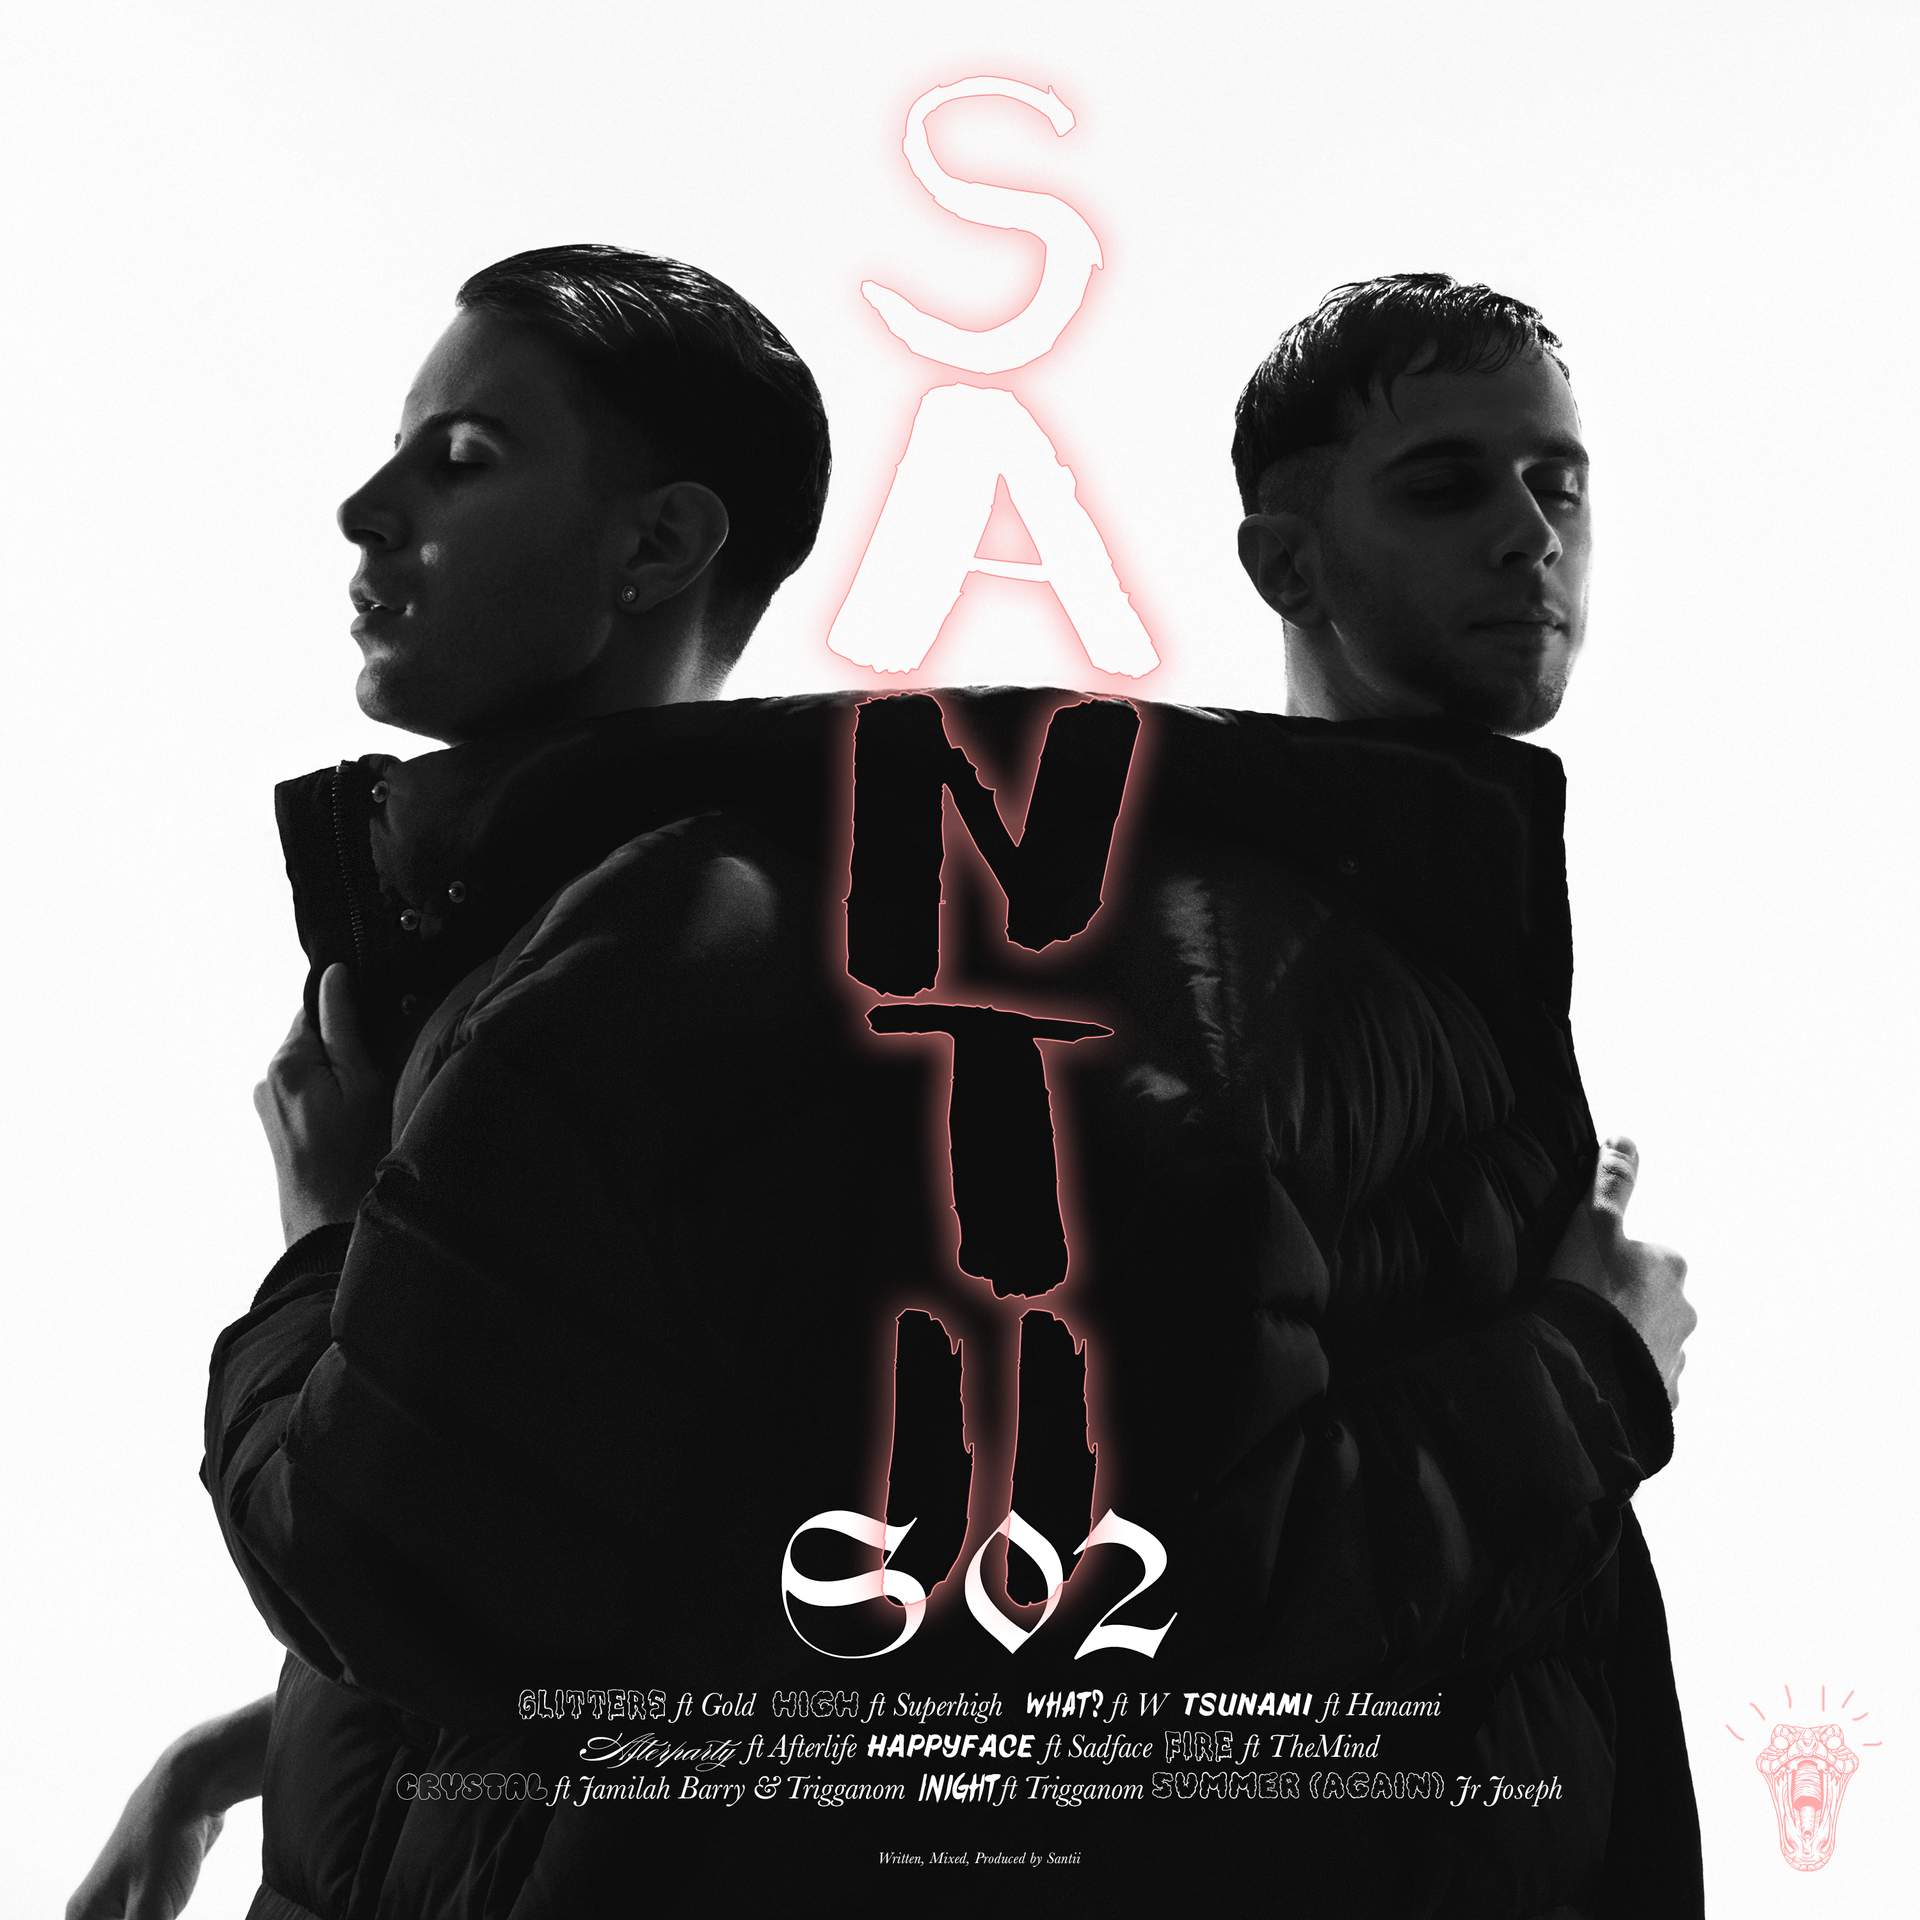 SANTII lanza su nuevo álbum llamado “S02”